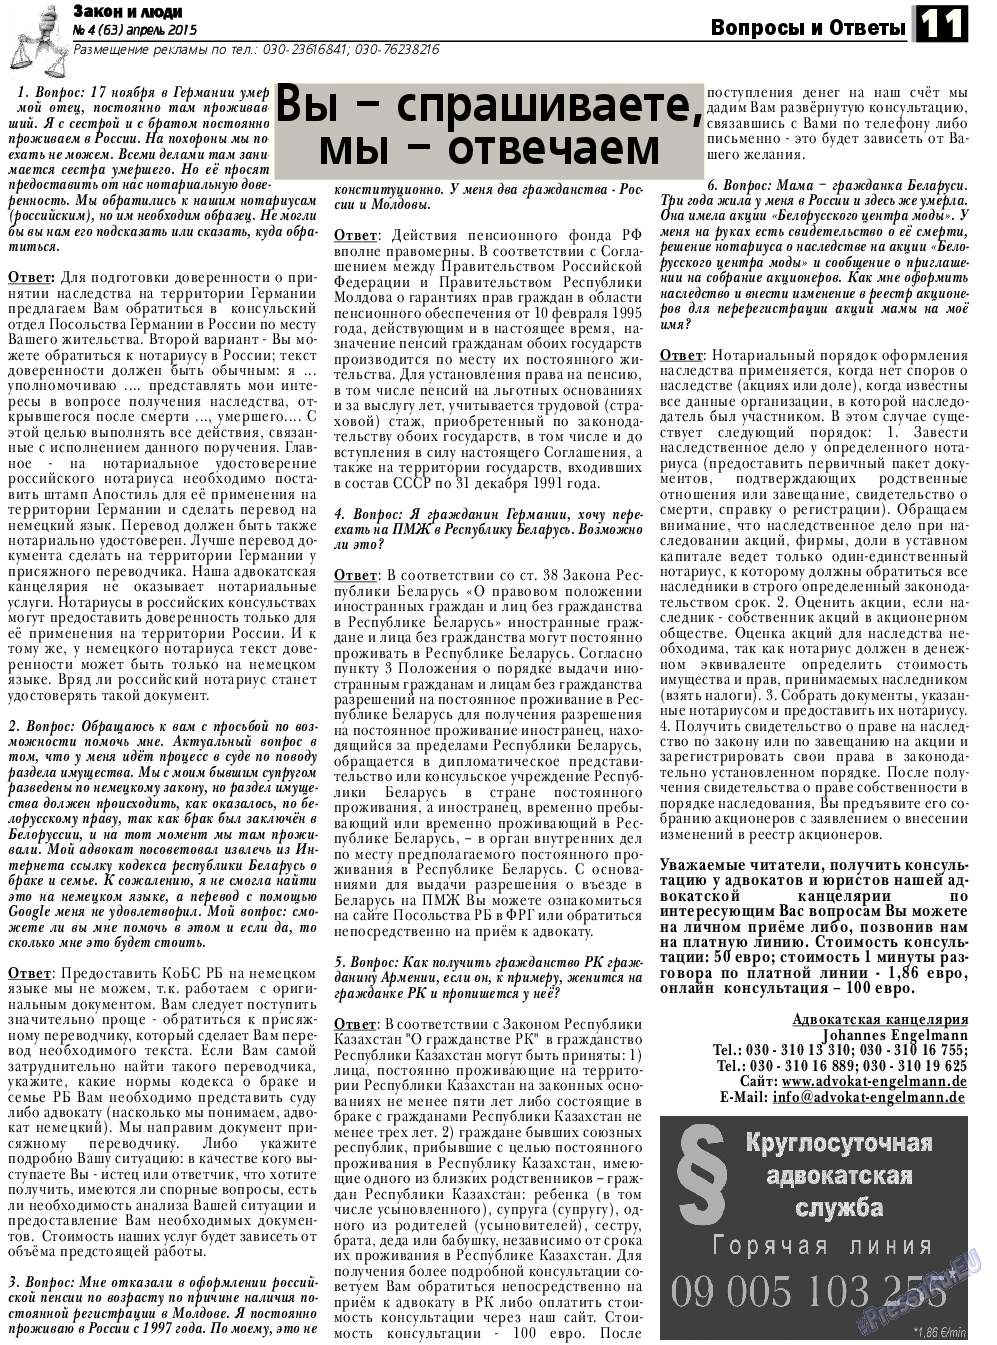 Закон и люди, газета. 2015 №4 стр.11